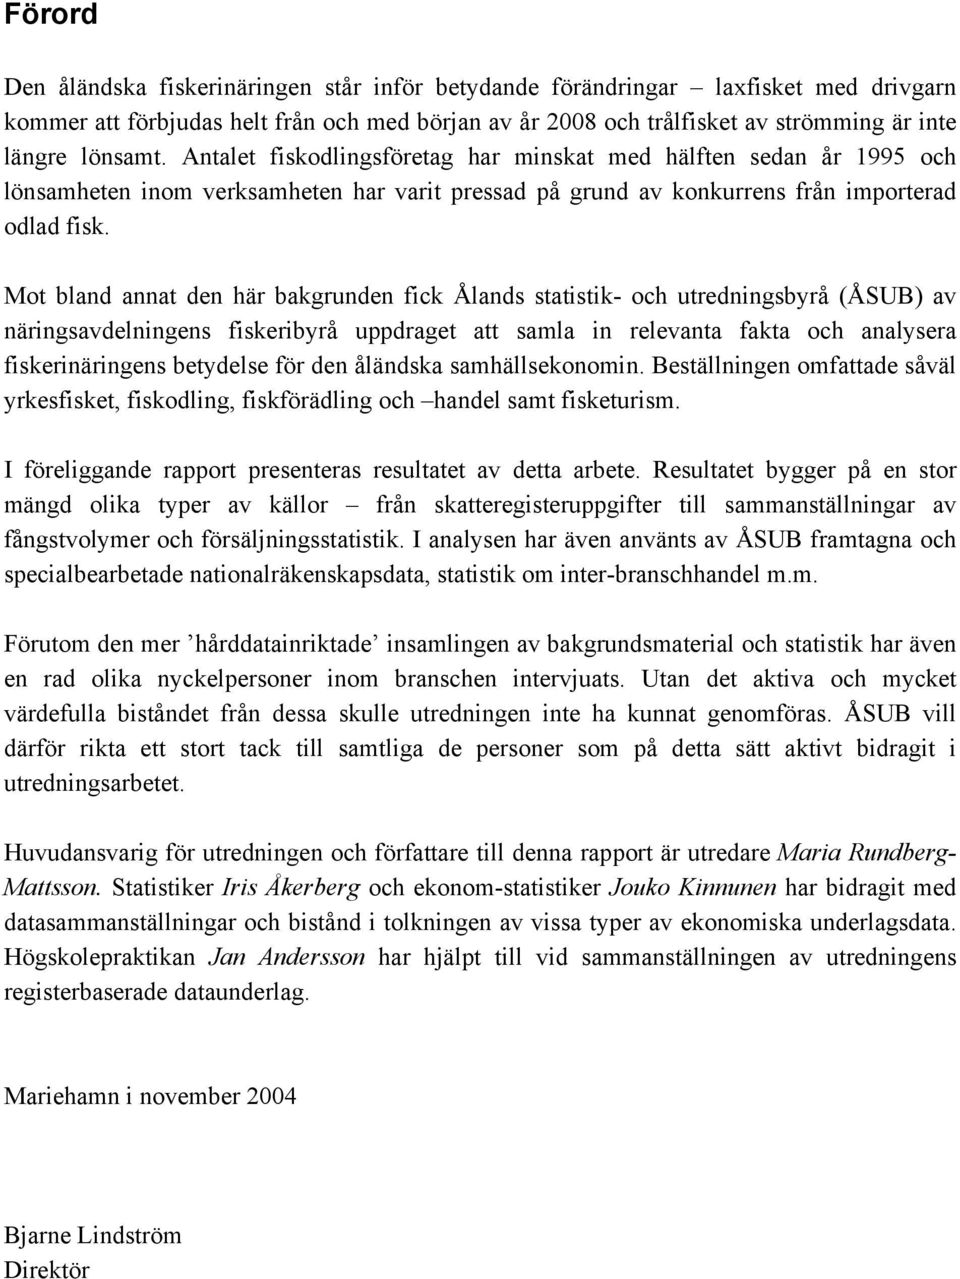 Mot bland annat den här bakgrunden fick Ålands statistik- och utredningsbyrå (ÅSUB) av näringsavdelningens fiskeribyrå uppdraget att samla in relevanta fakta och analysera fiskerinäringens betydelse